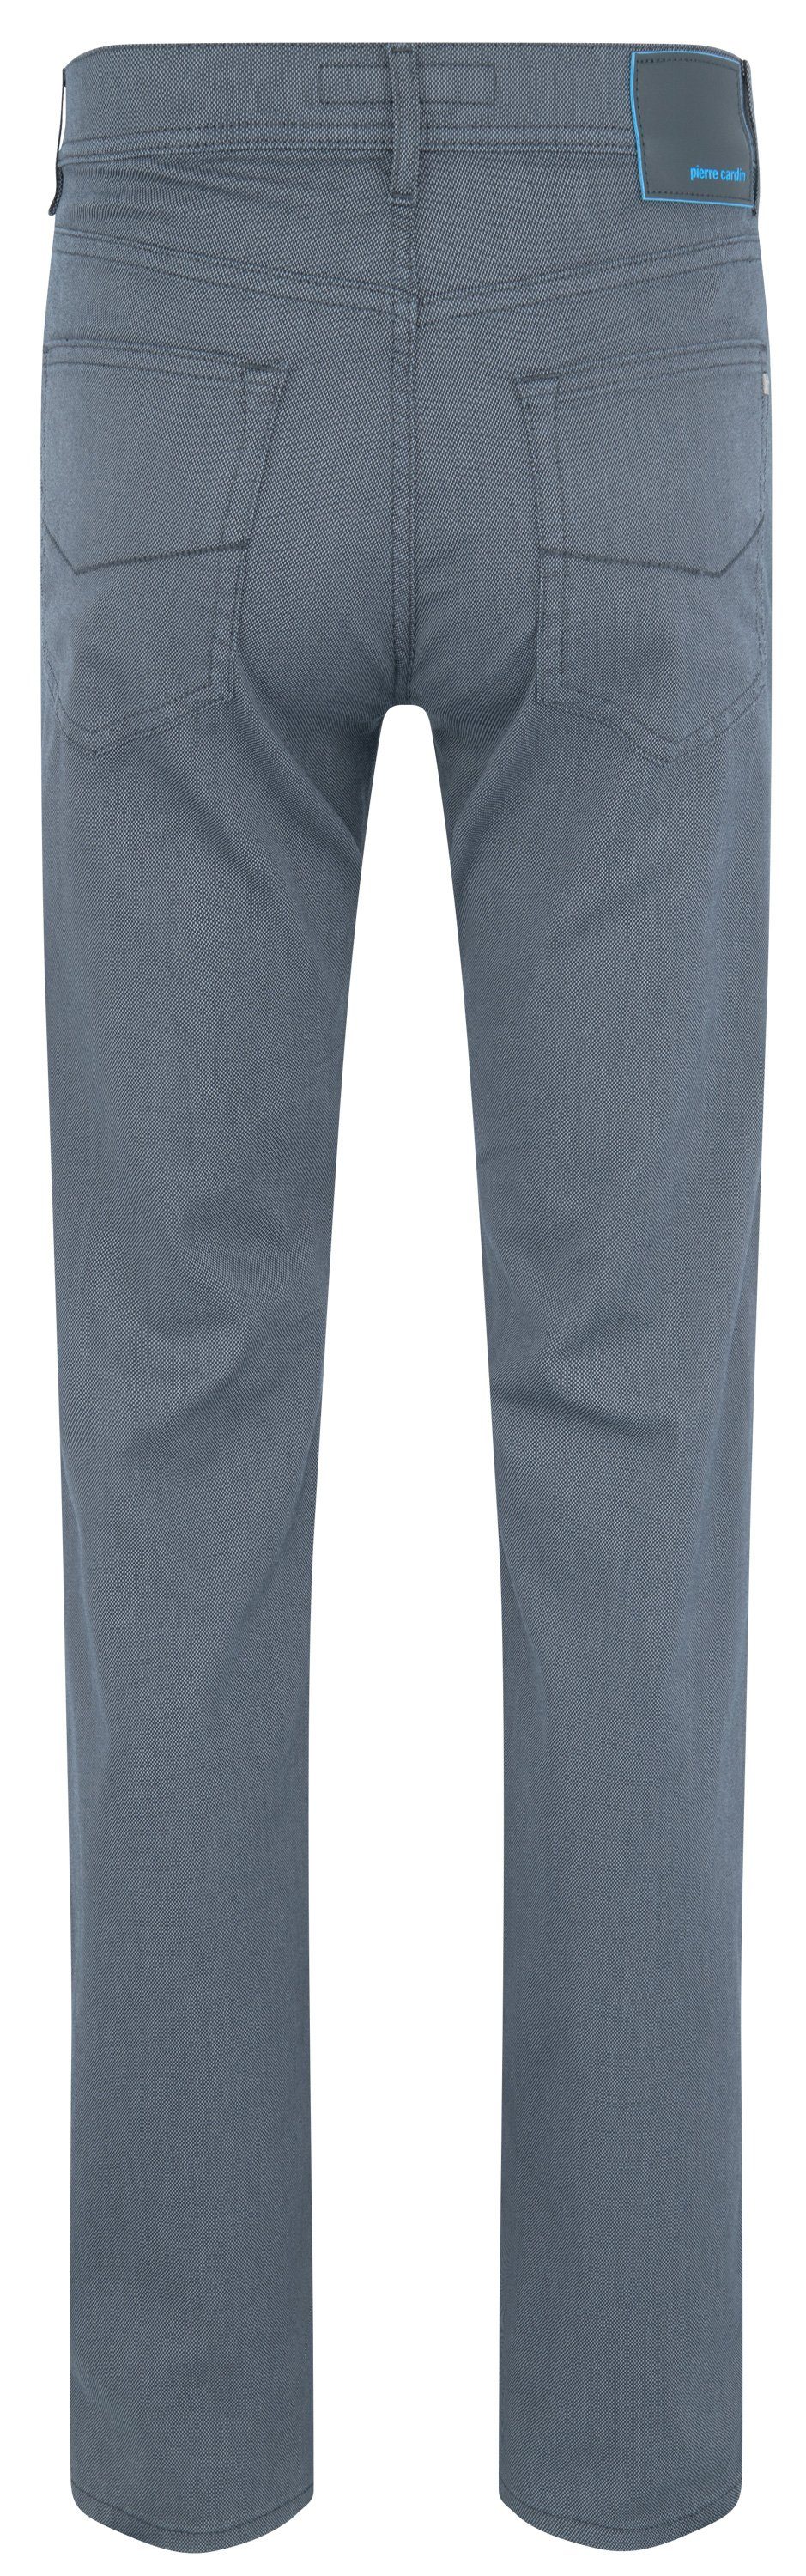 CARDIN PIERRE magnet Cardin 5-Pocket-Jeans LYON 30940 1017.9315 Pierre